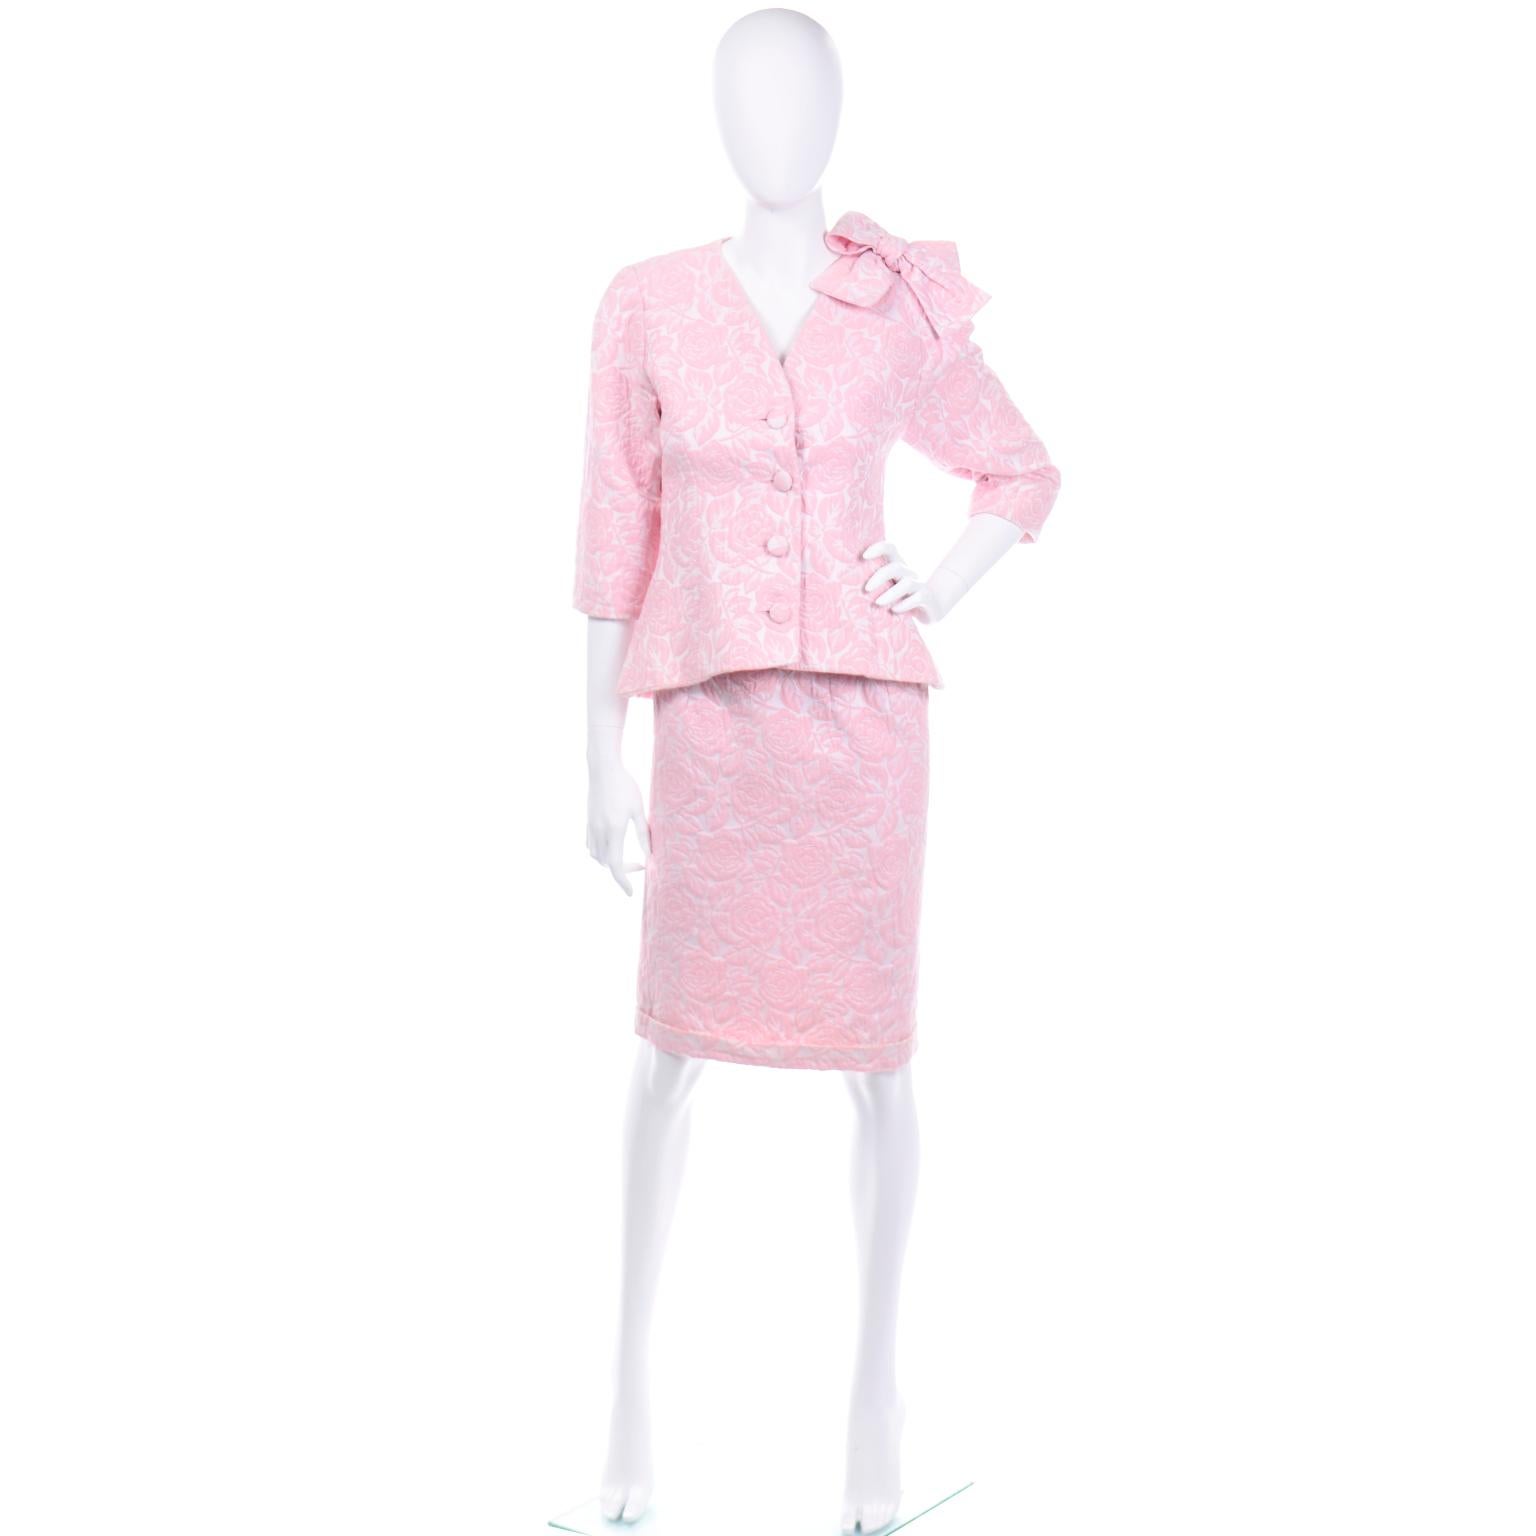 Dies ist ein sehr hübscher pinkfarbener Rock aus geblümtem Brokat von Guy Laroche Boutique. Dieses 2-teilige Outfit eignet sich hervorragend als Tageskleid für einen Hochzeitsgast oder für ein besonderes Mittagessen oder eine Veranstaltung. Die